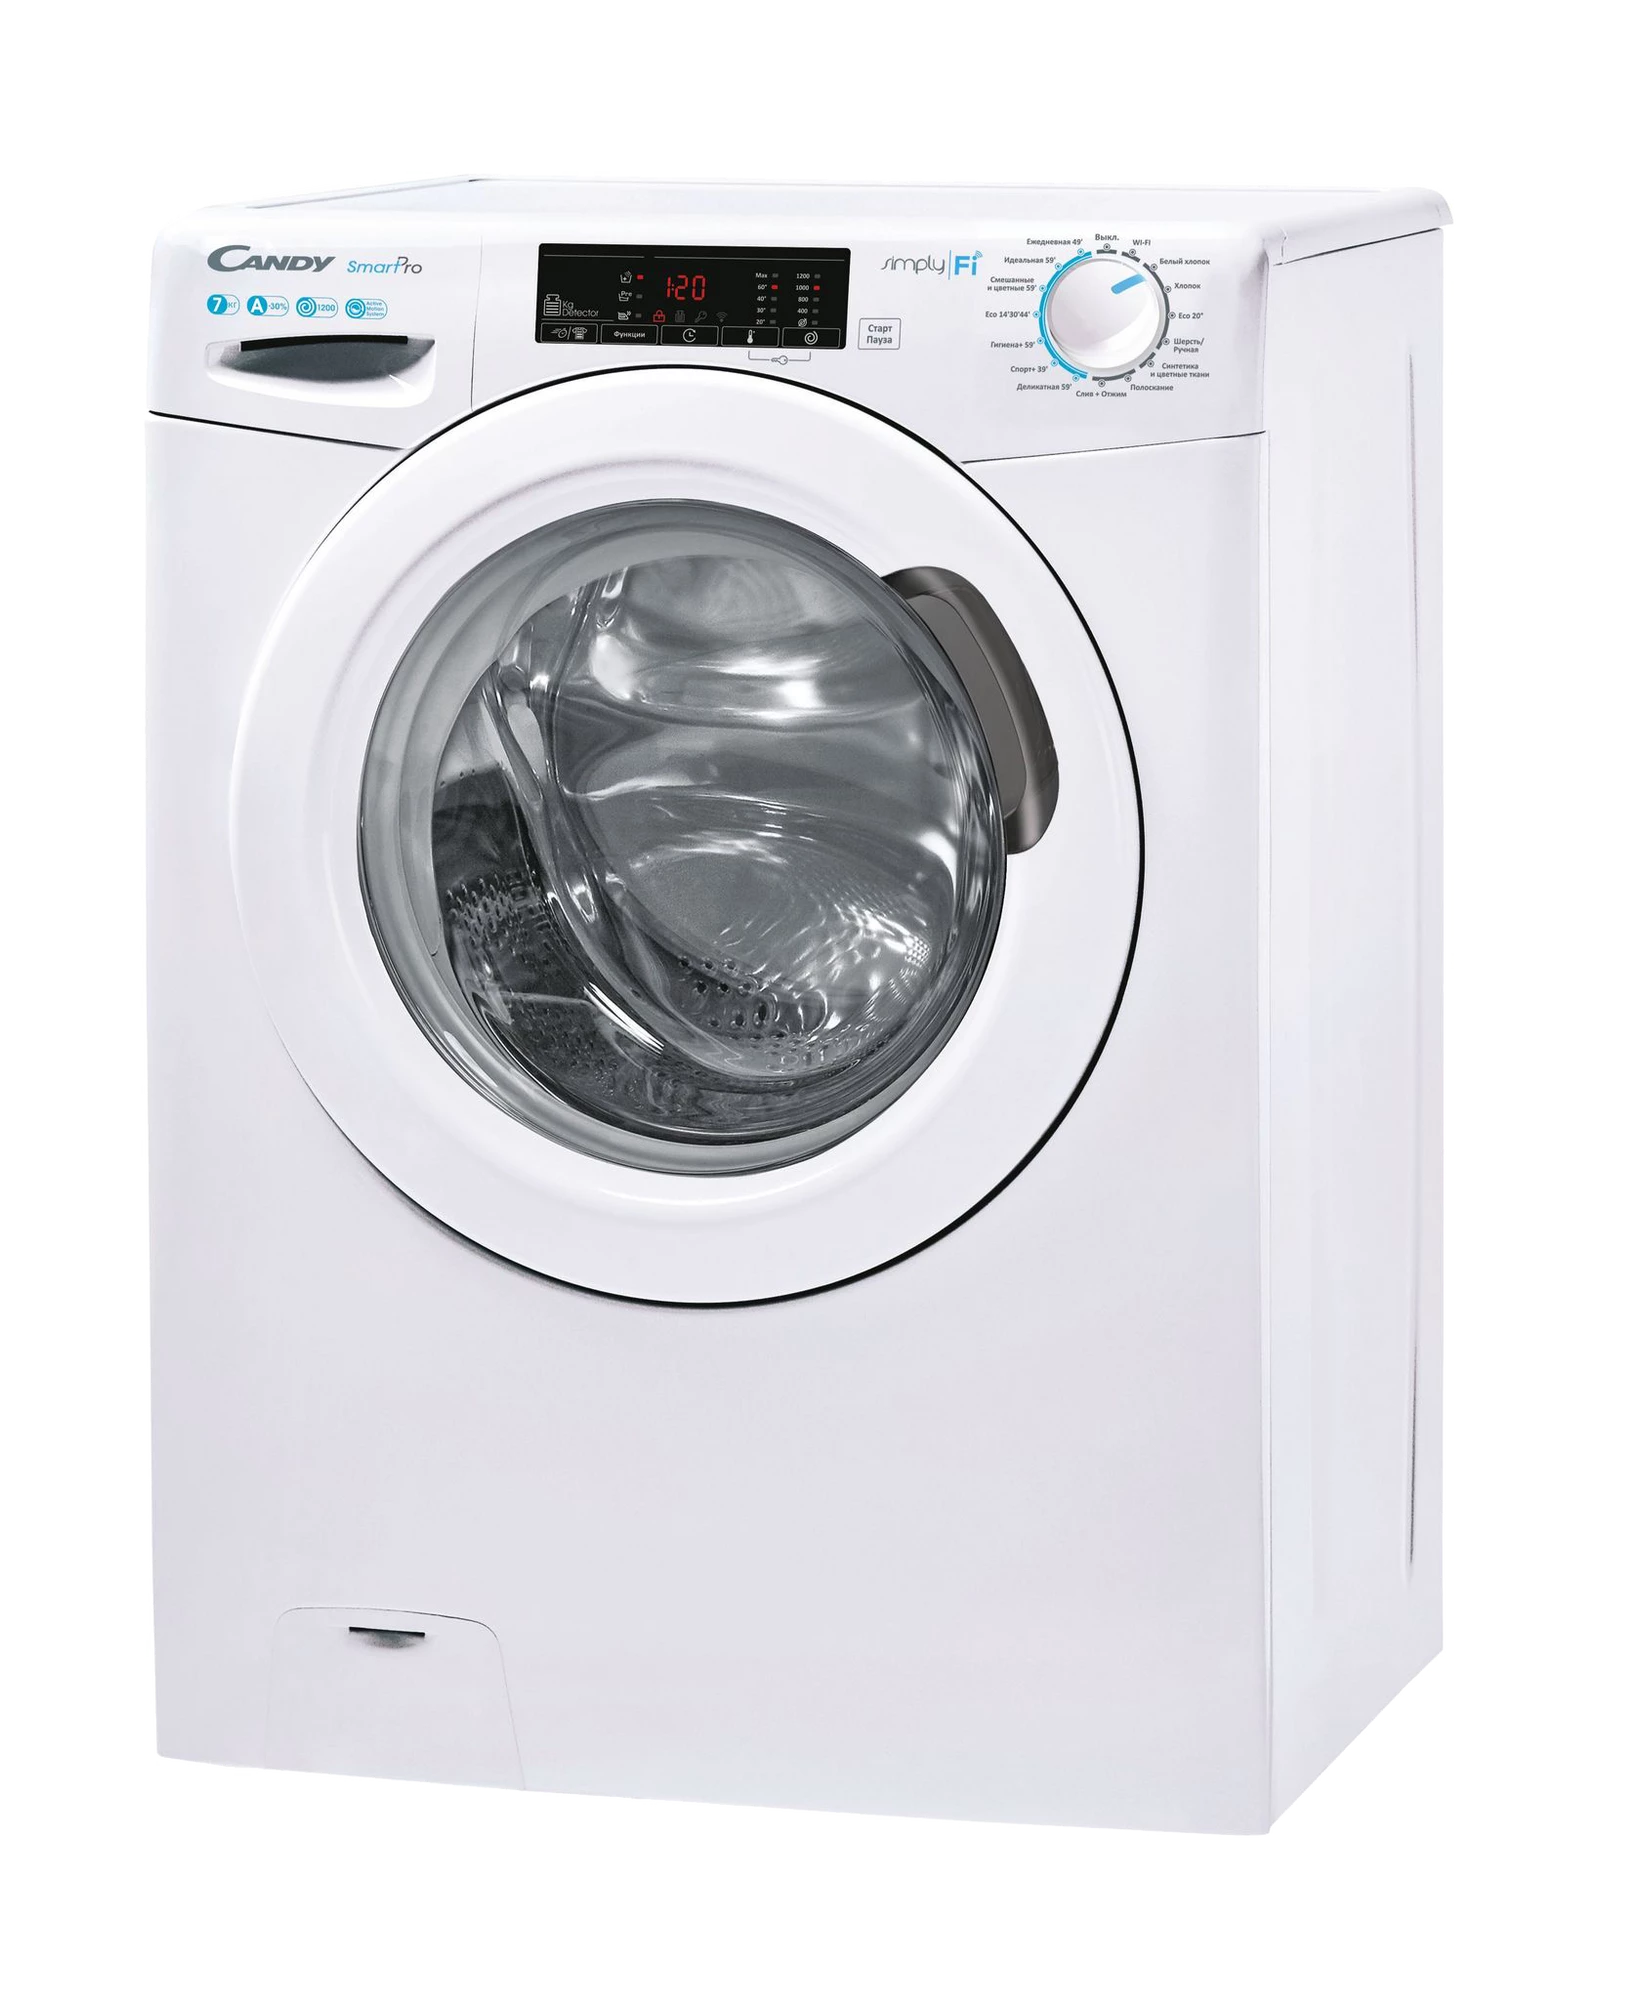 Узкая стиральная машина Candy Smart Pro CO4 127T3/2-07